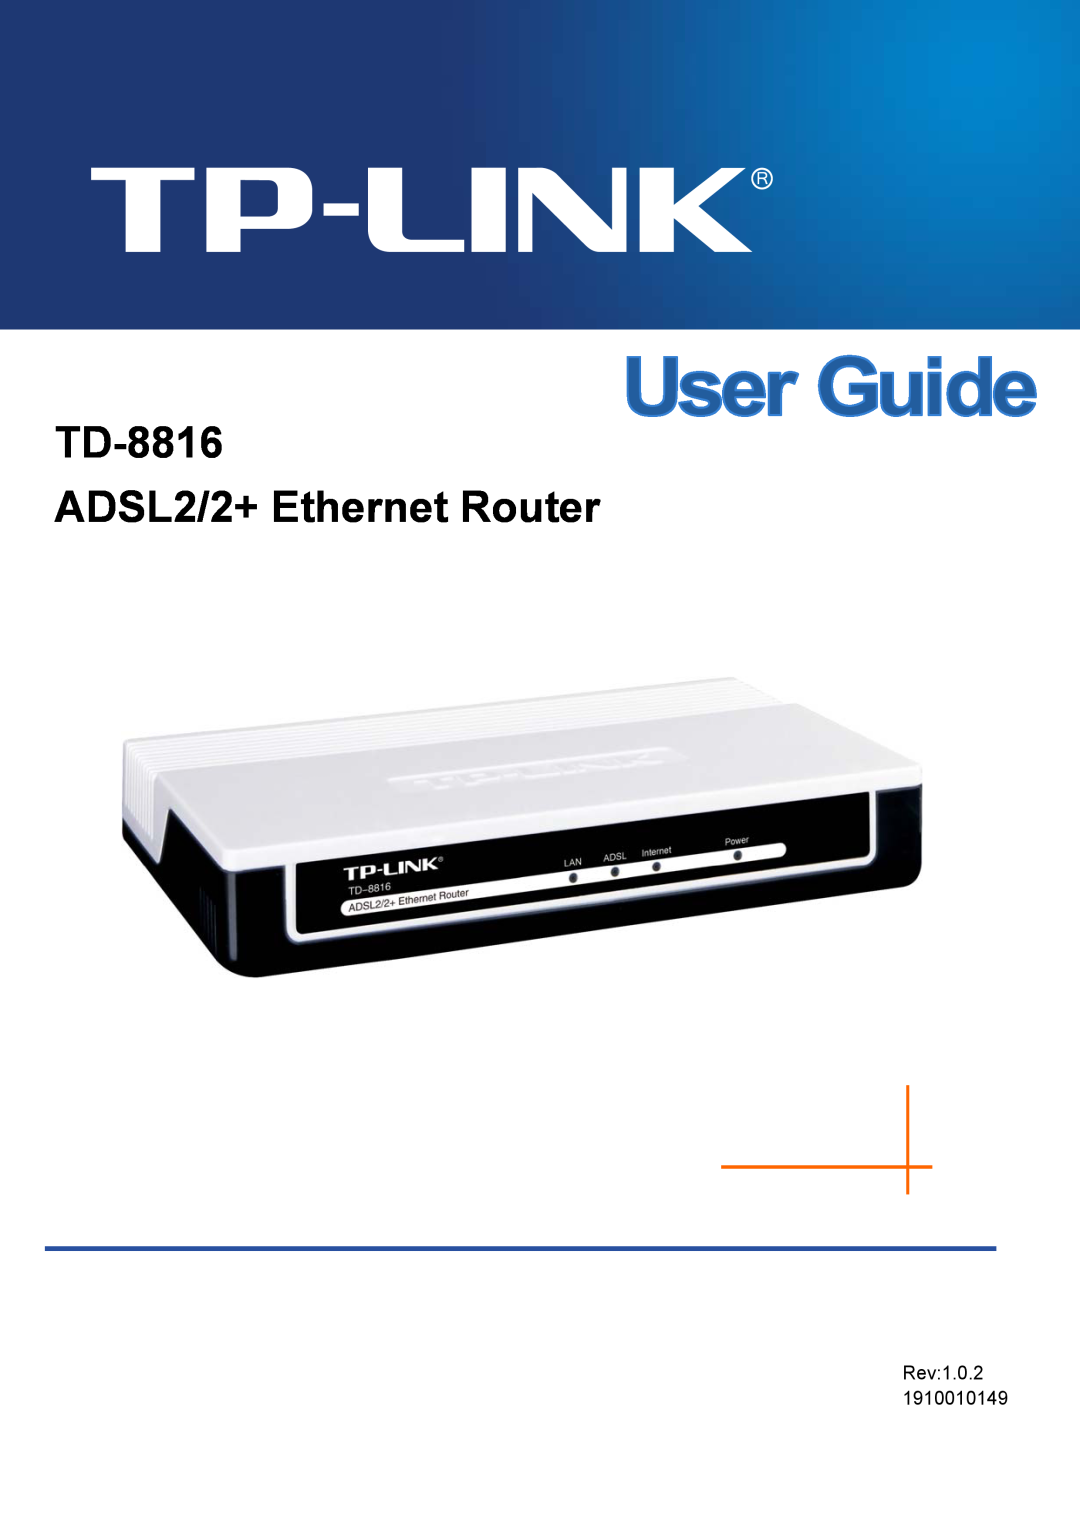 TP-Link manual TD-8816 ADSL2/2+ Ethernet Router, Rev1.0.2 1910010149 